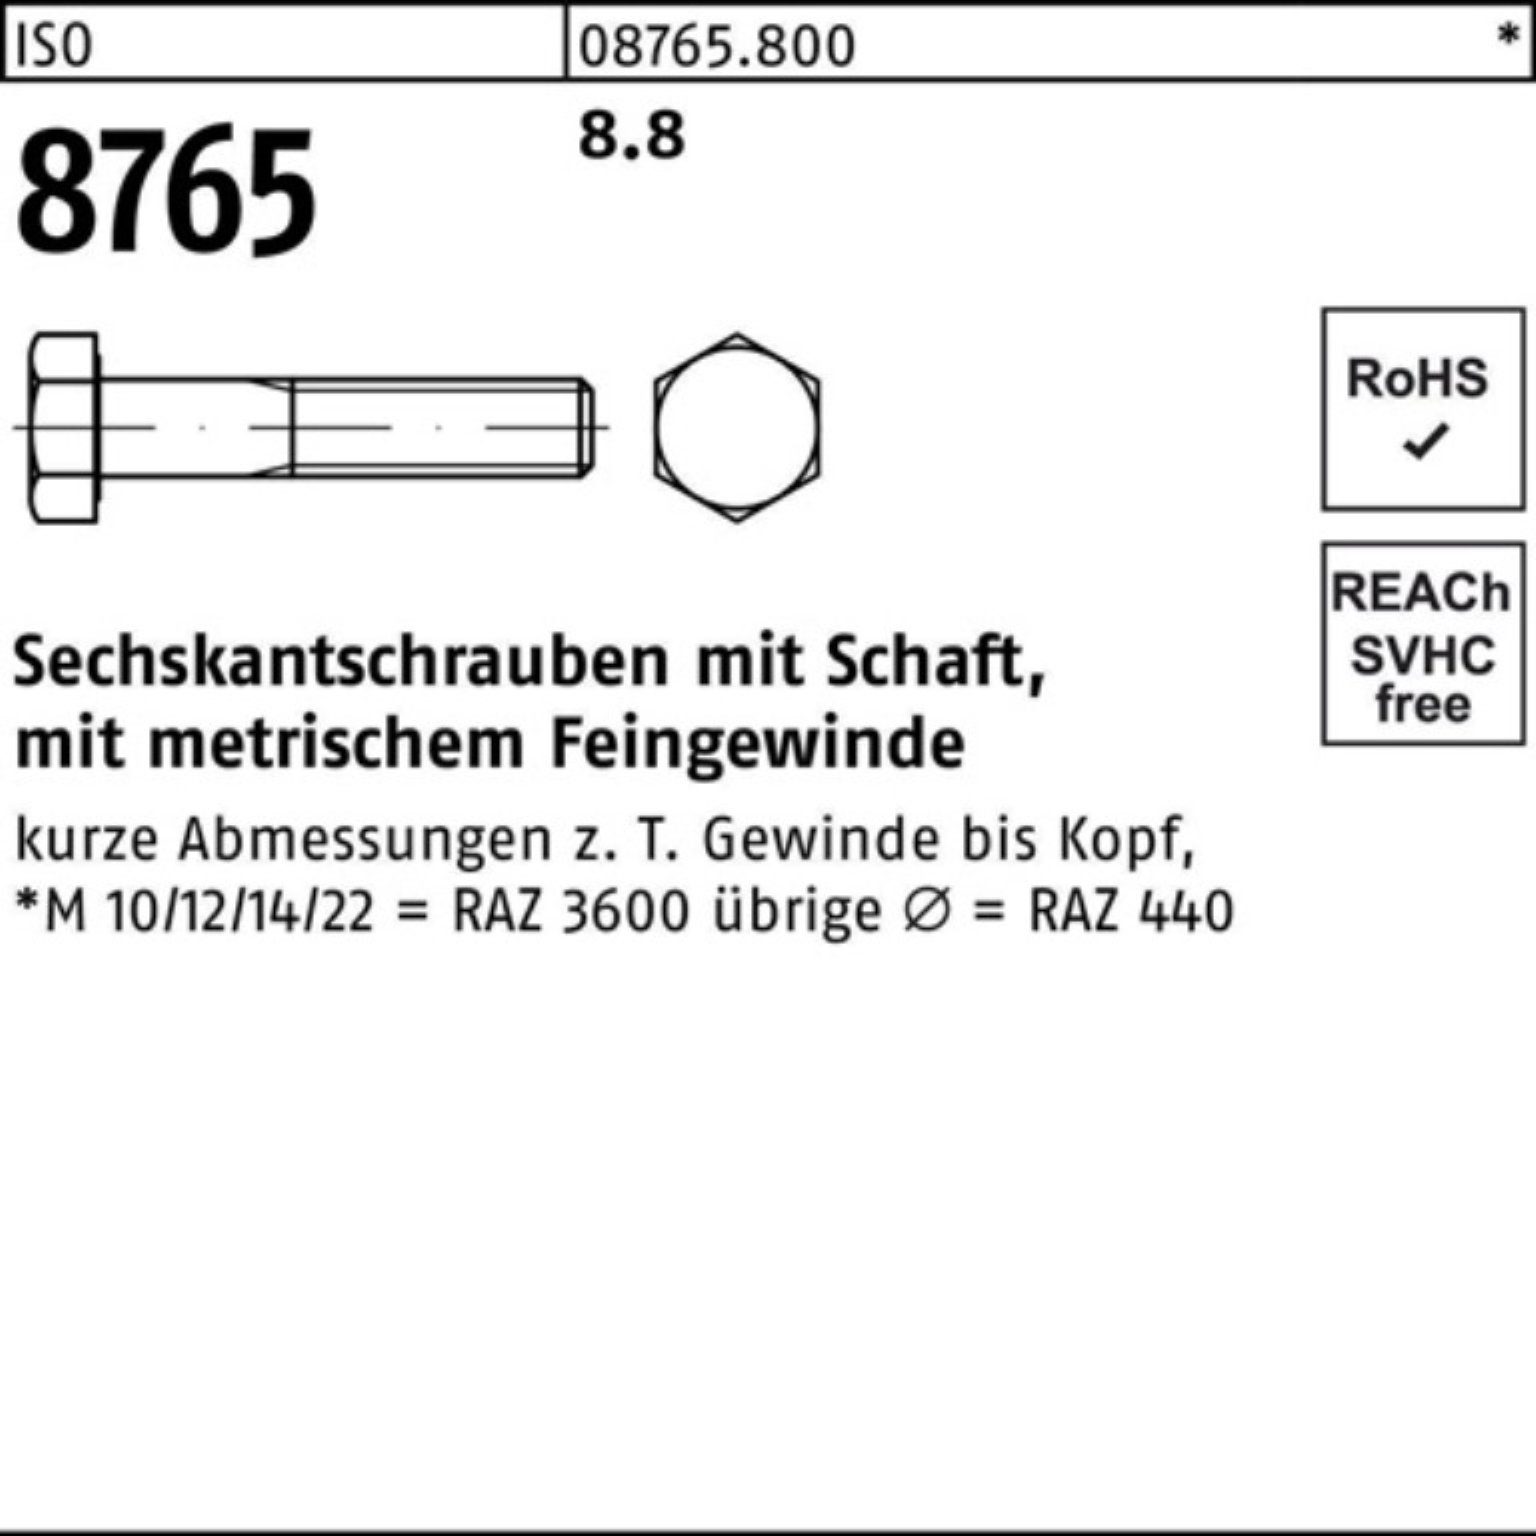 Reyher Sechskantschraube Sechskantschraube 8765 Schaft 10 M24x1,5x130 Stück 8.8 ISO 100er Pack